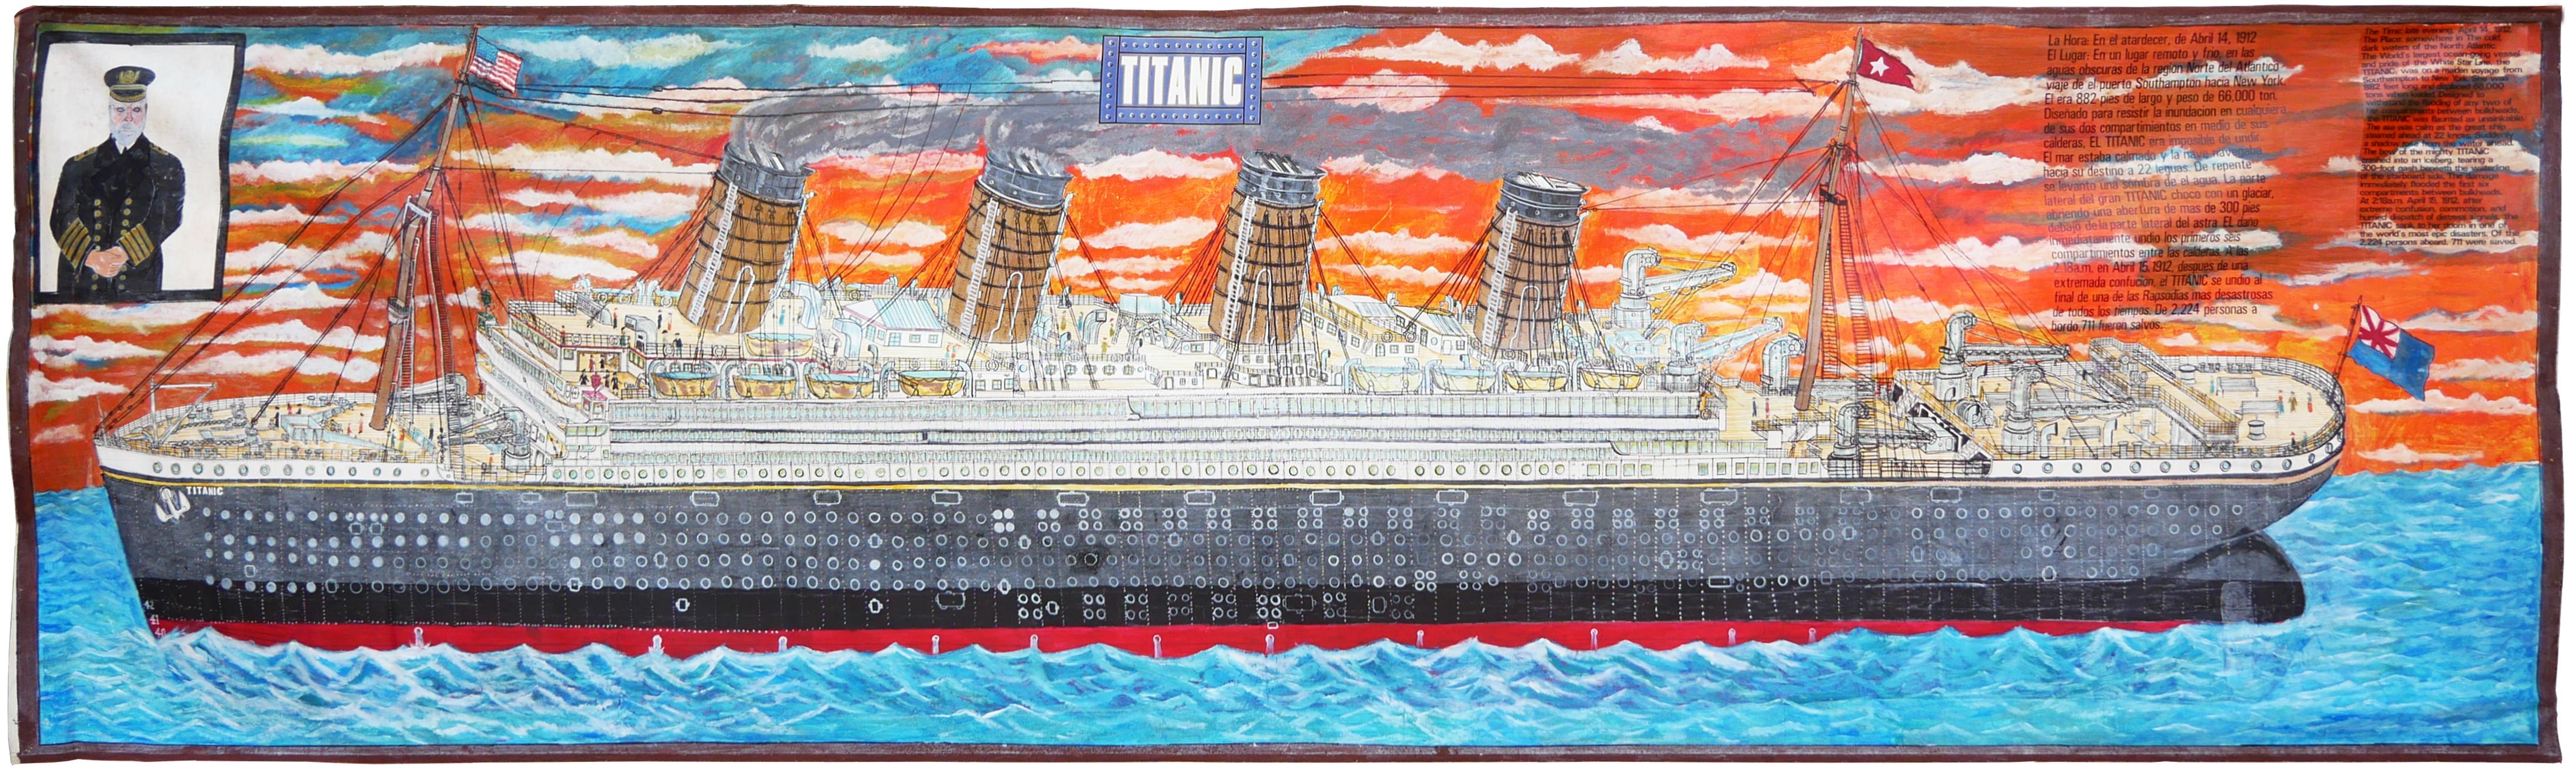 Unknown Abstract Drawing – Abstraktes zeitgenössisches Gemälde der Titanic in Orange und Blau